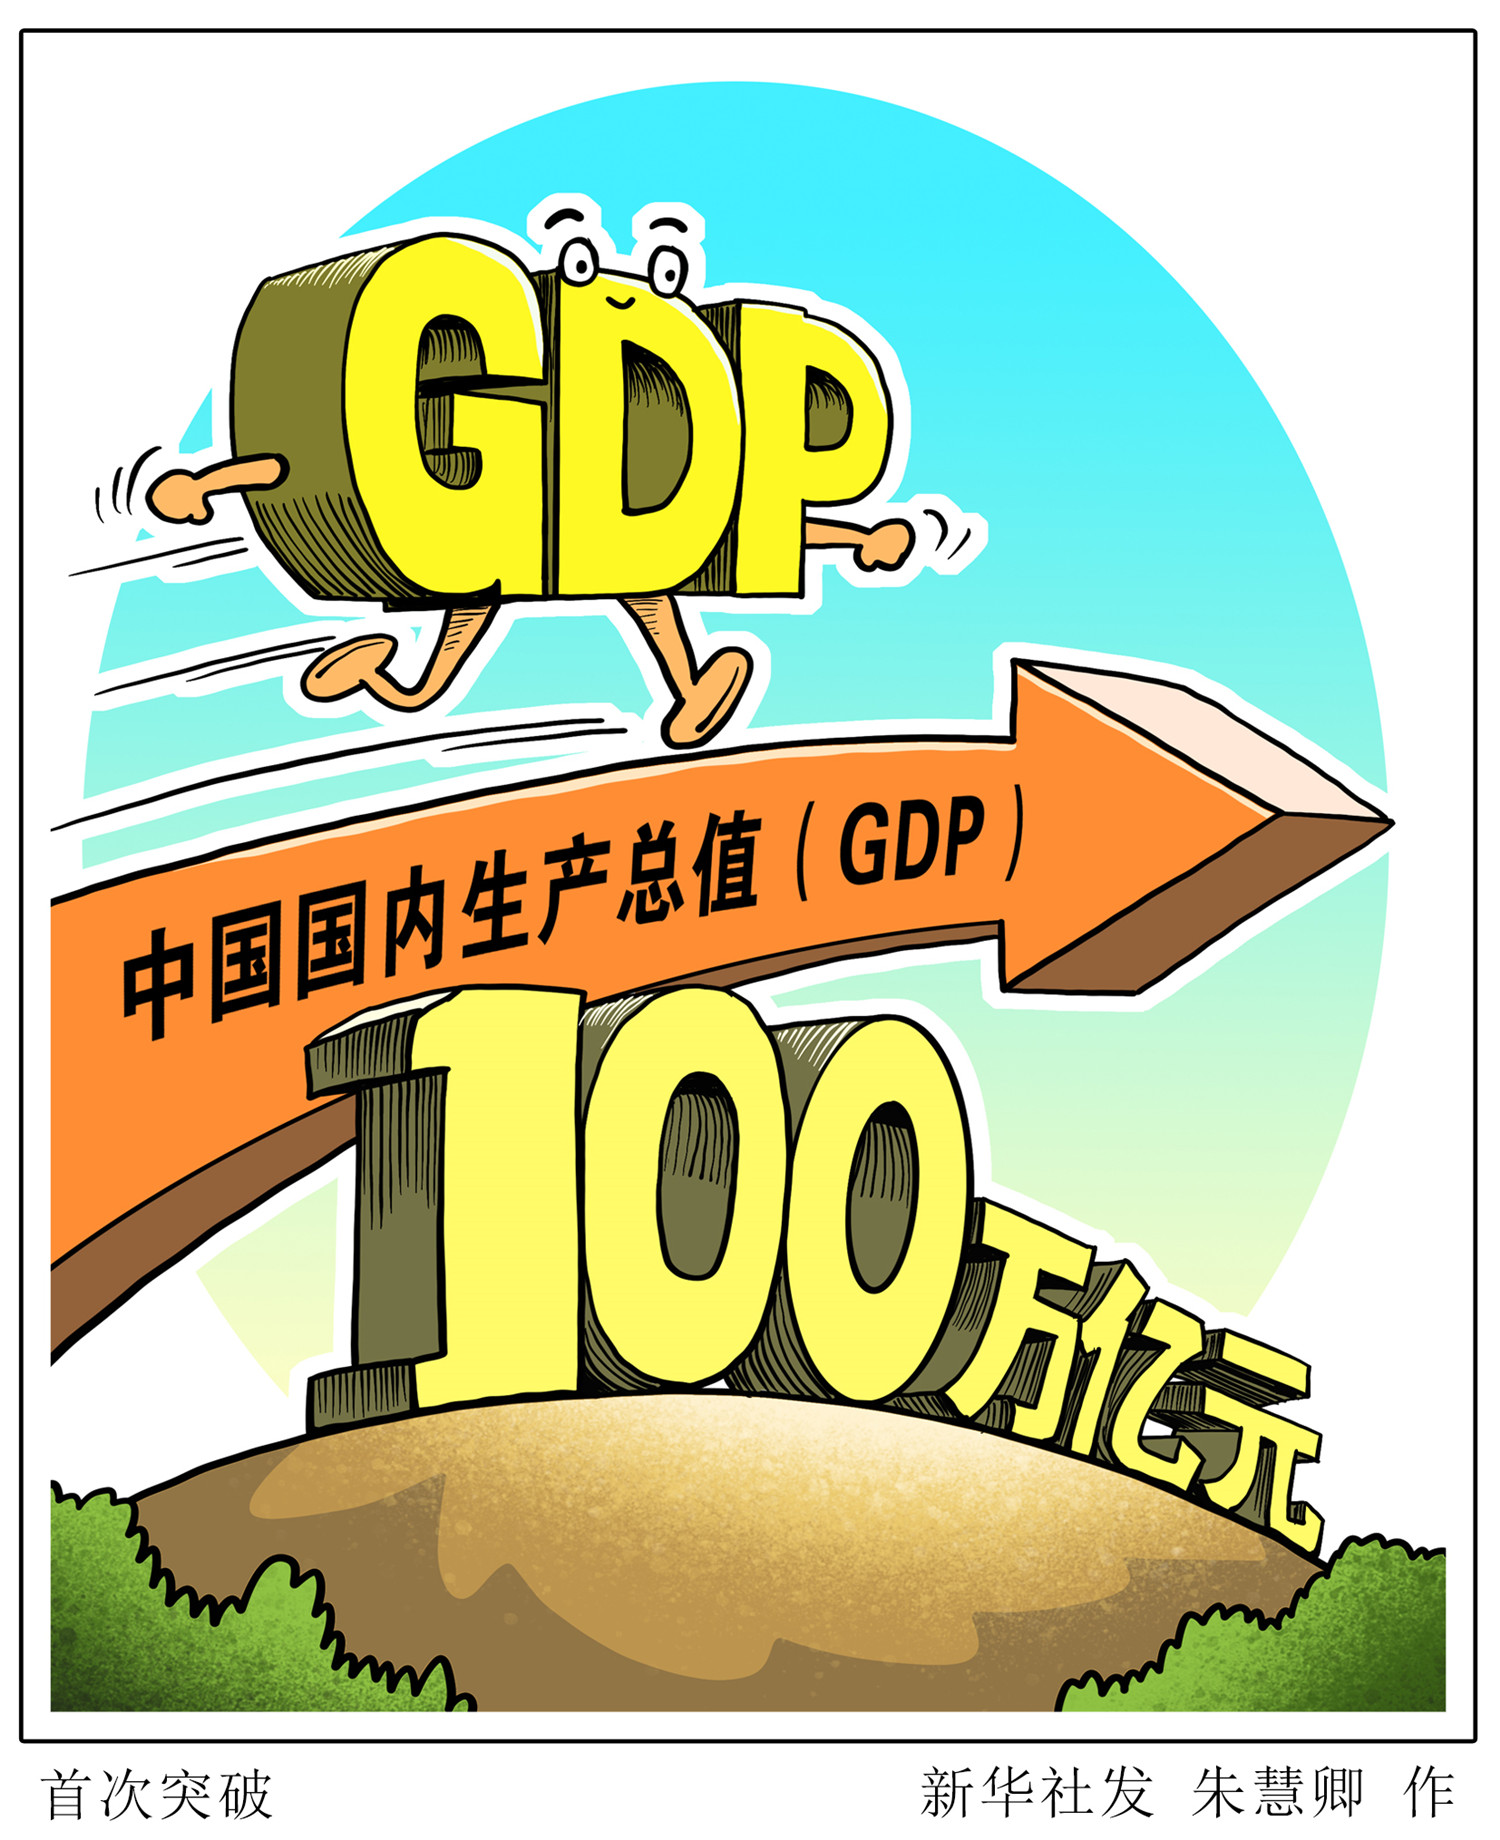 国家统计局1月18日发布数据,2020年,中国国内生产总值(gdp)为1015986